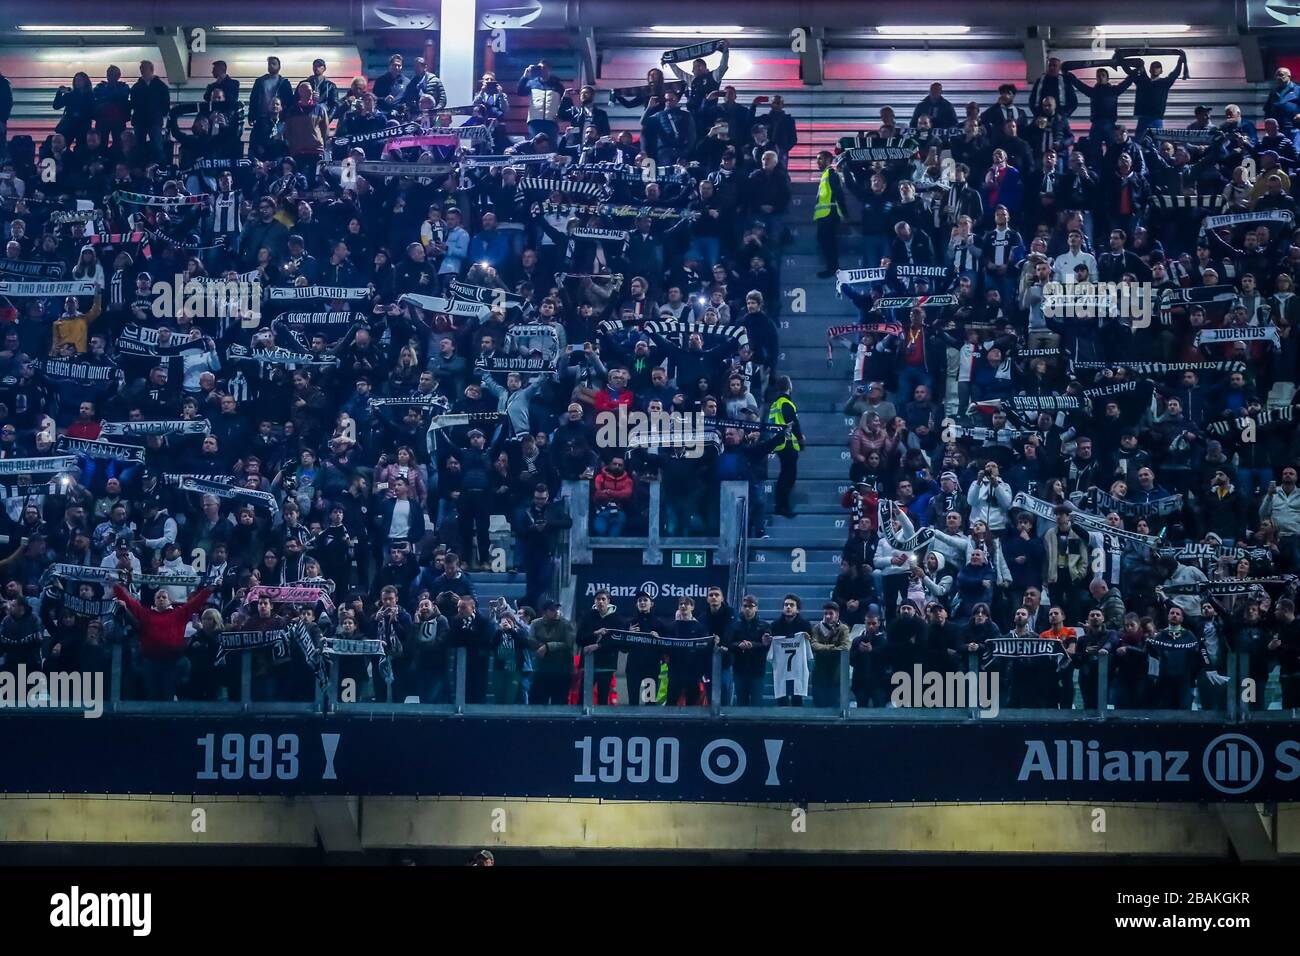 Seguidores de la Juventus durante la temporada de fútbol 2019/20 imágenes simbólicas - crédito de la foto Fabrizio Carabelli /LM/ Foto de stock